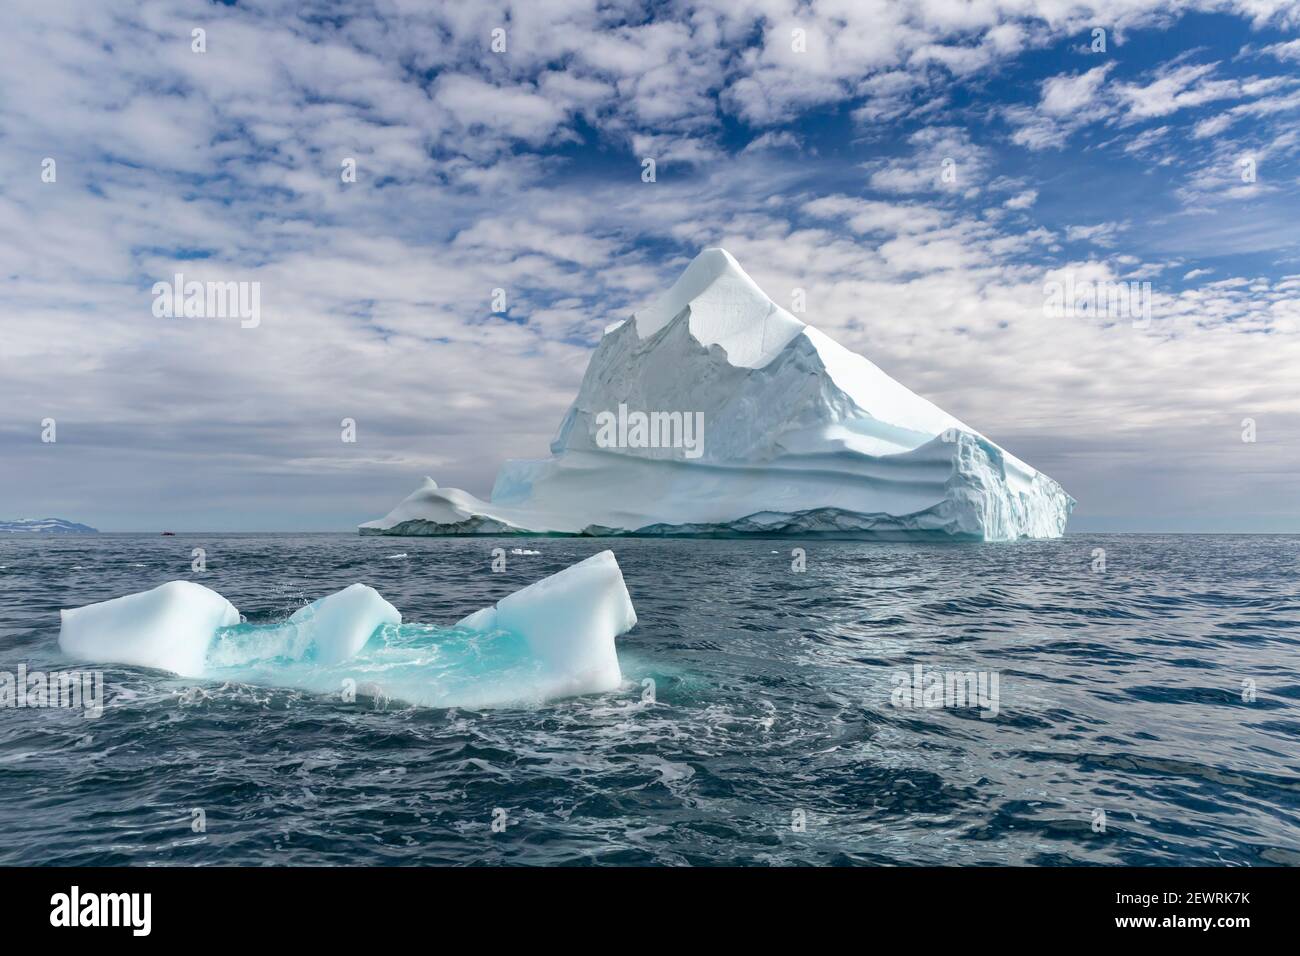 Enormi iceberg a Capo Brewster, il punto più orientale della frastagliata e montagnosa Penisola Savoia, Groenlandia, regioni polari Foto Stock